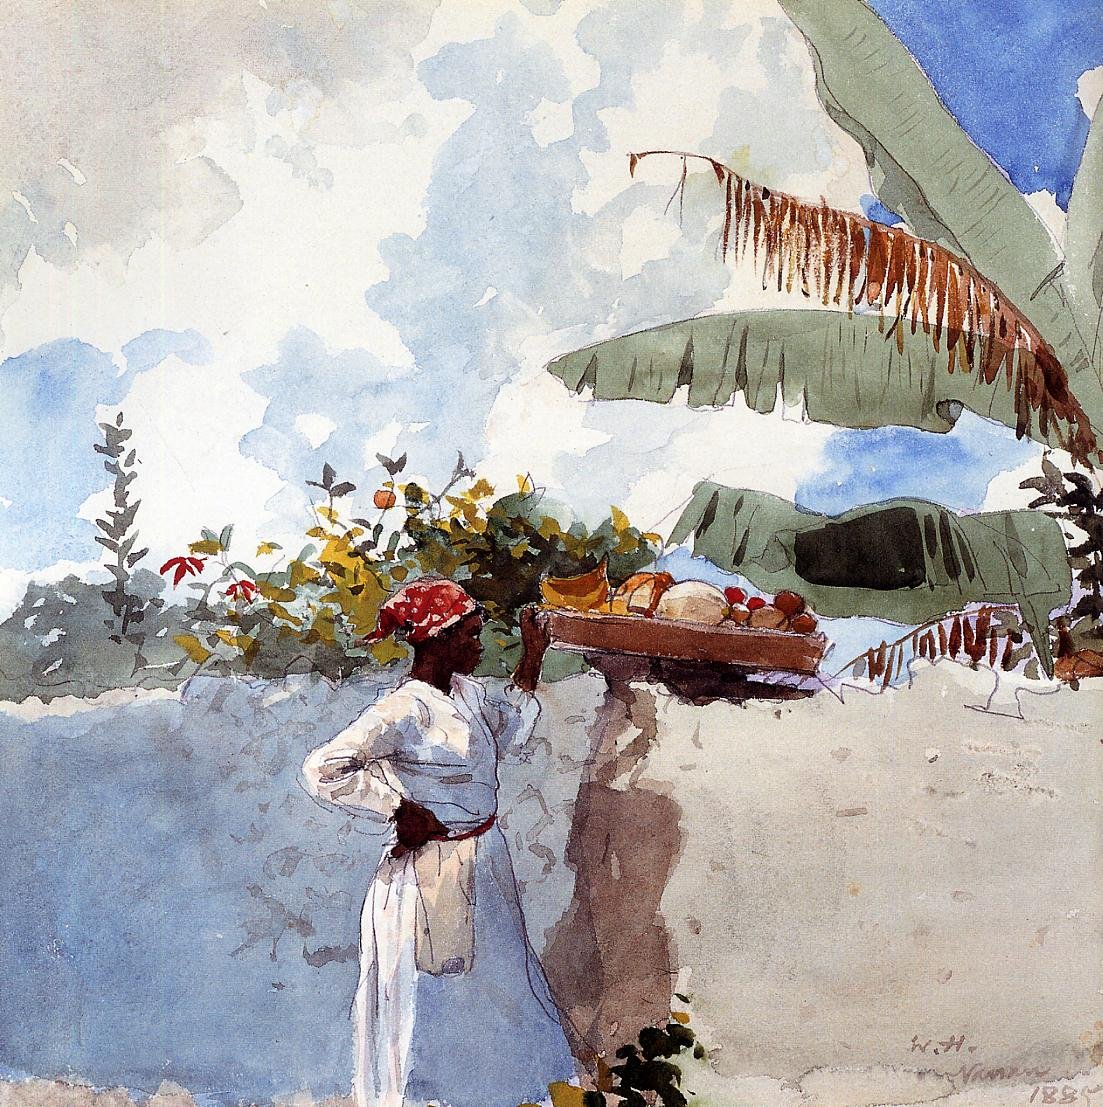 Rest - Winslow Homer - 1885